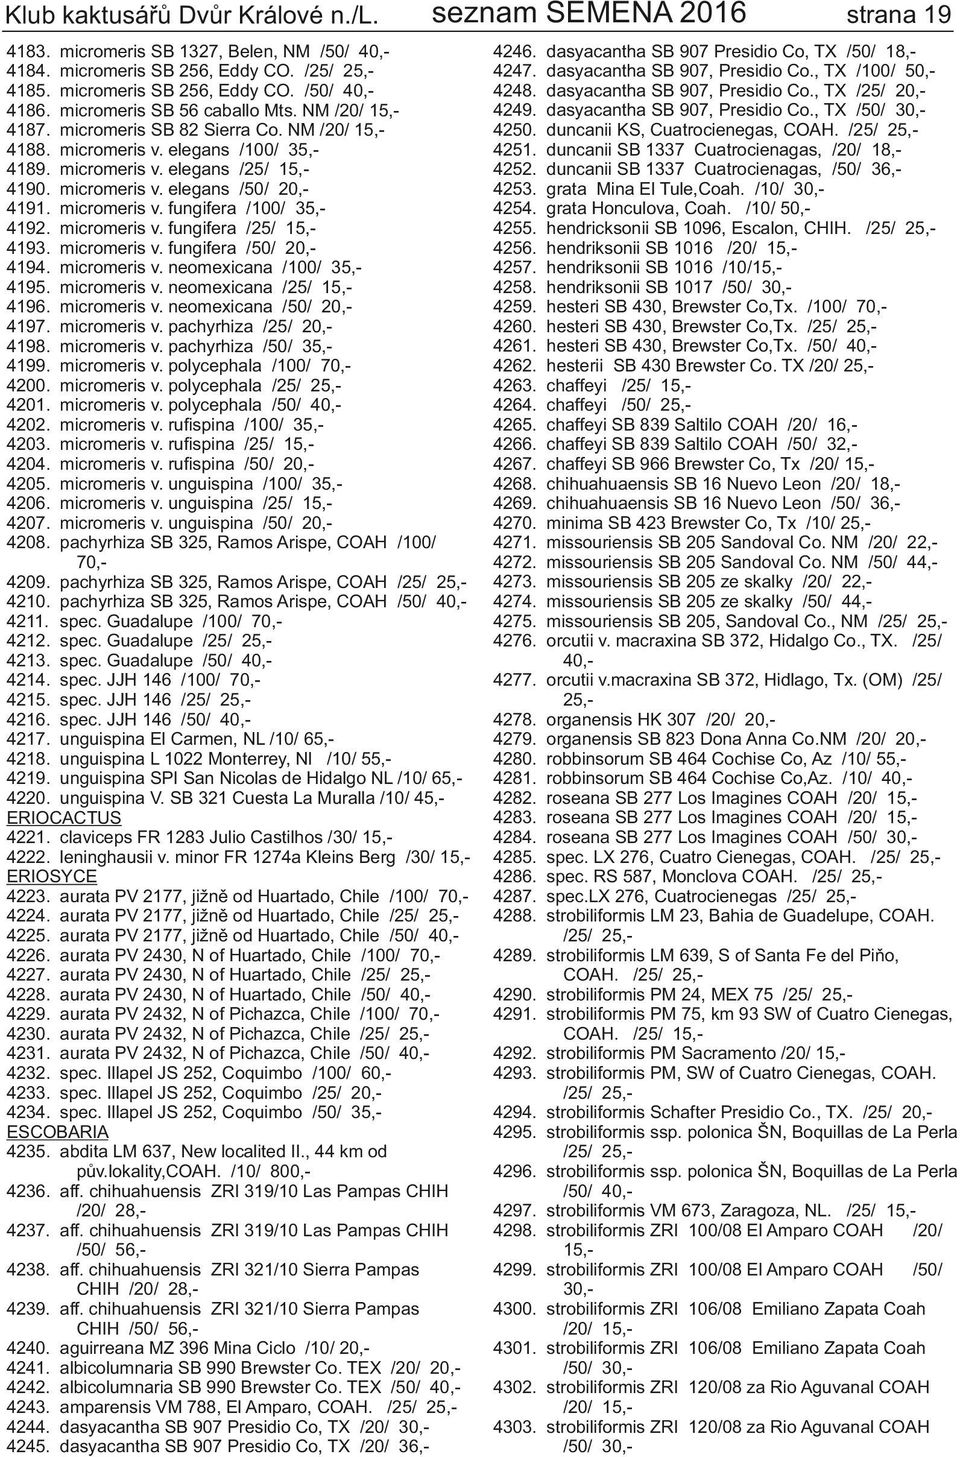 NM /20/ 15,micromeris v. elegans /100/ 35,micromeris v. elegans /25/ 15,micromeris v. elegans /50/ 20,micromeris v. fungifera /100/ 35,micromeris v. fungifera /25/ 15,micromeris v.